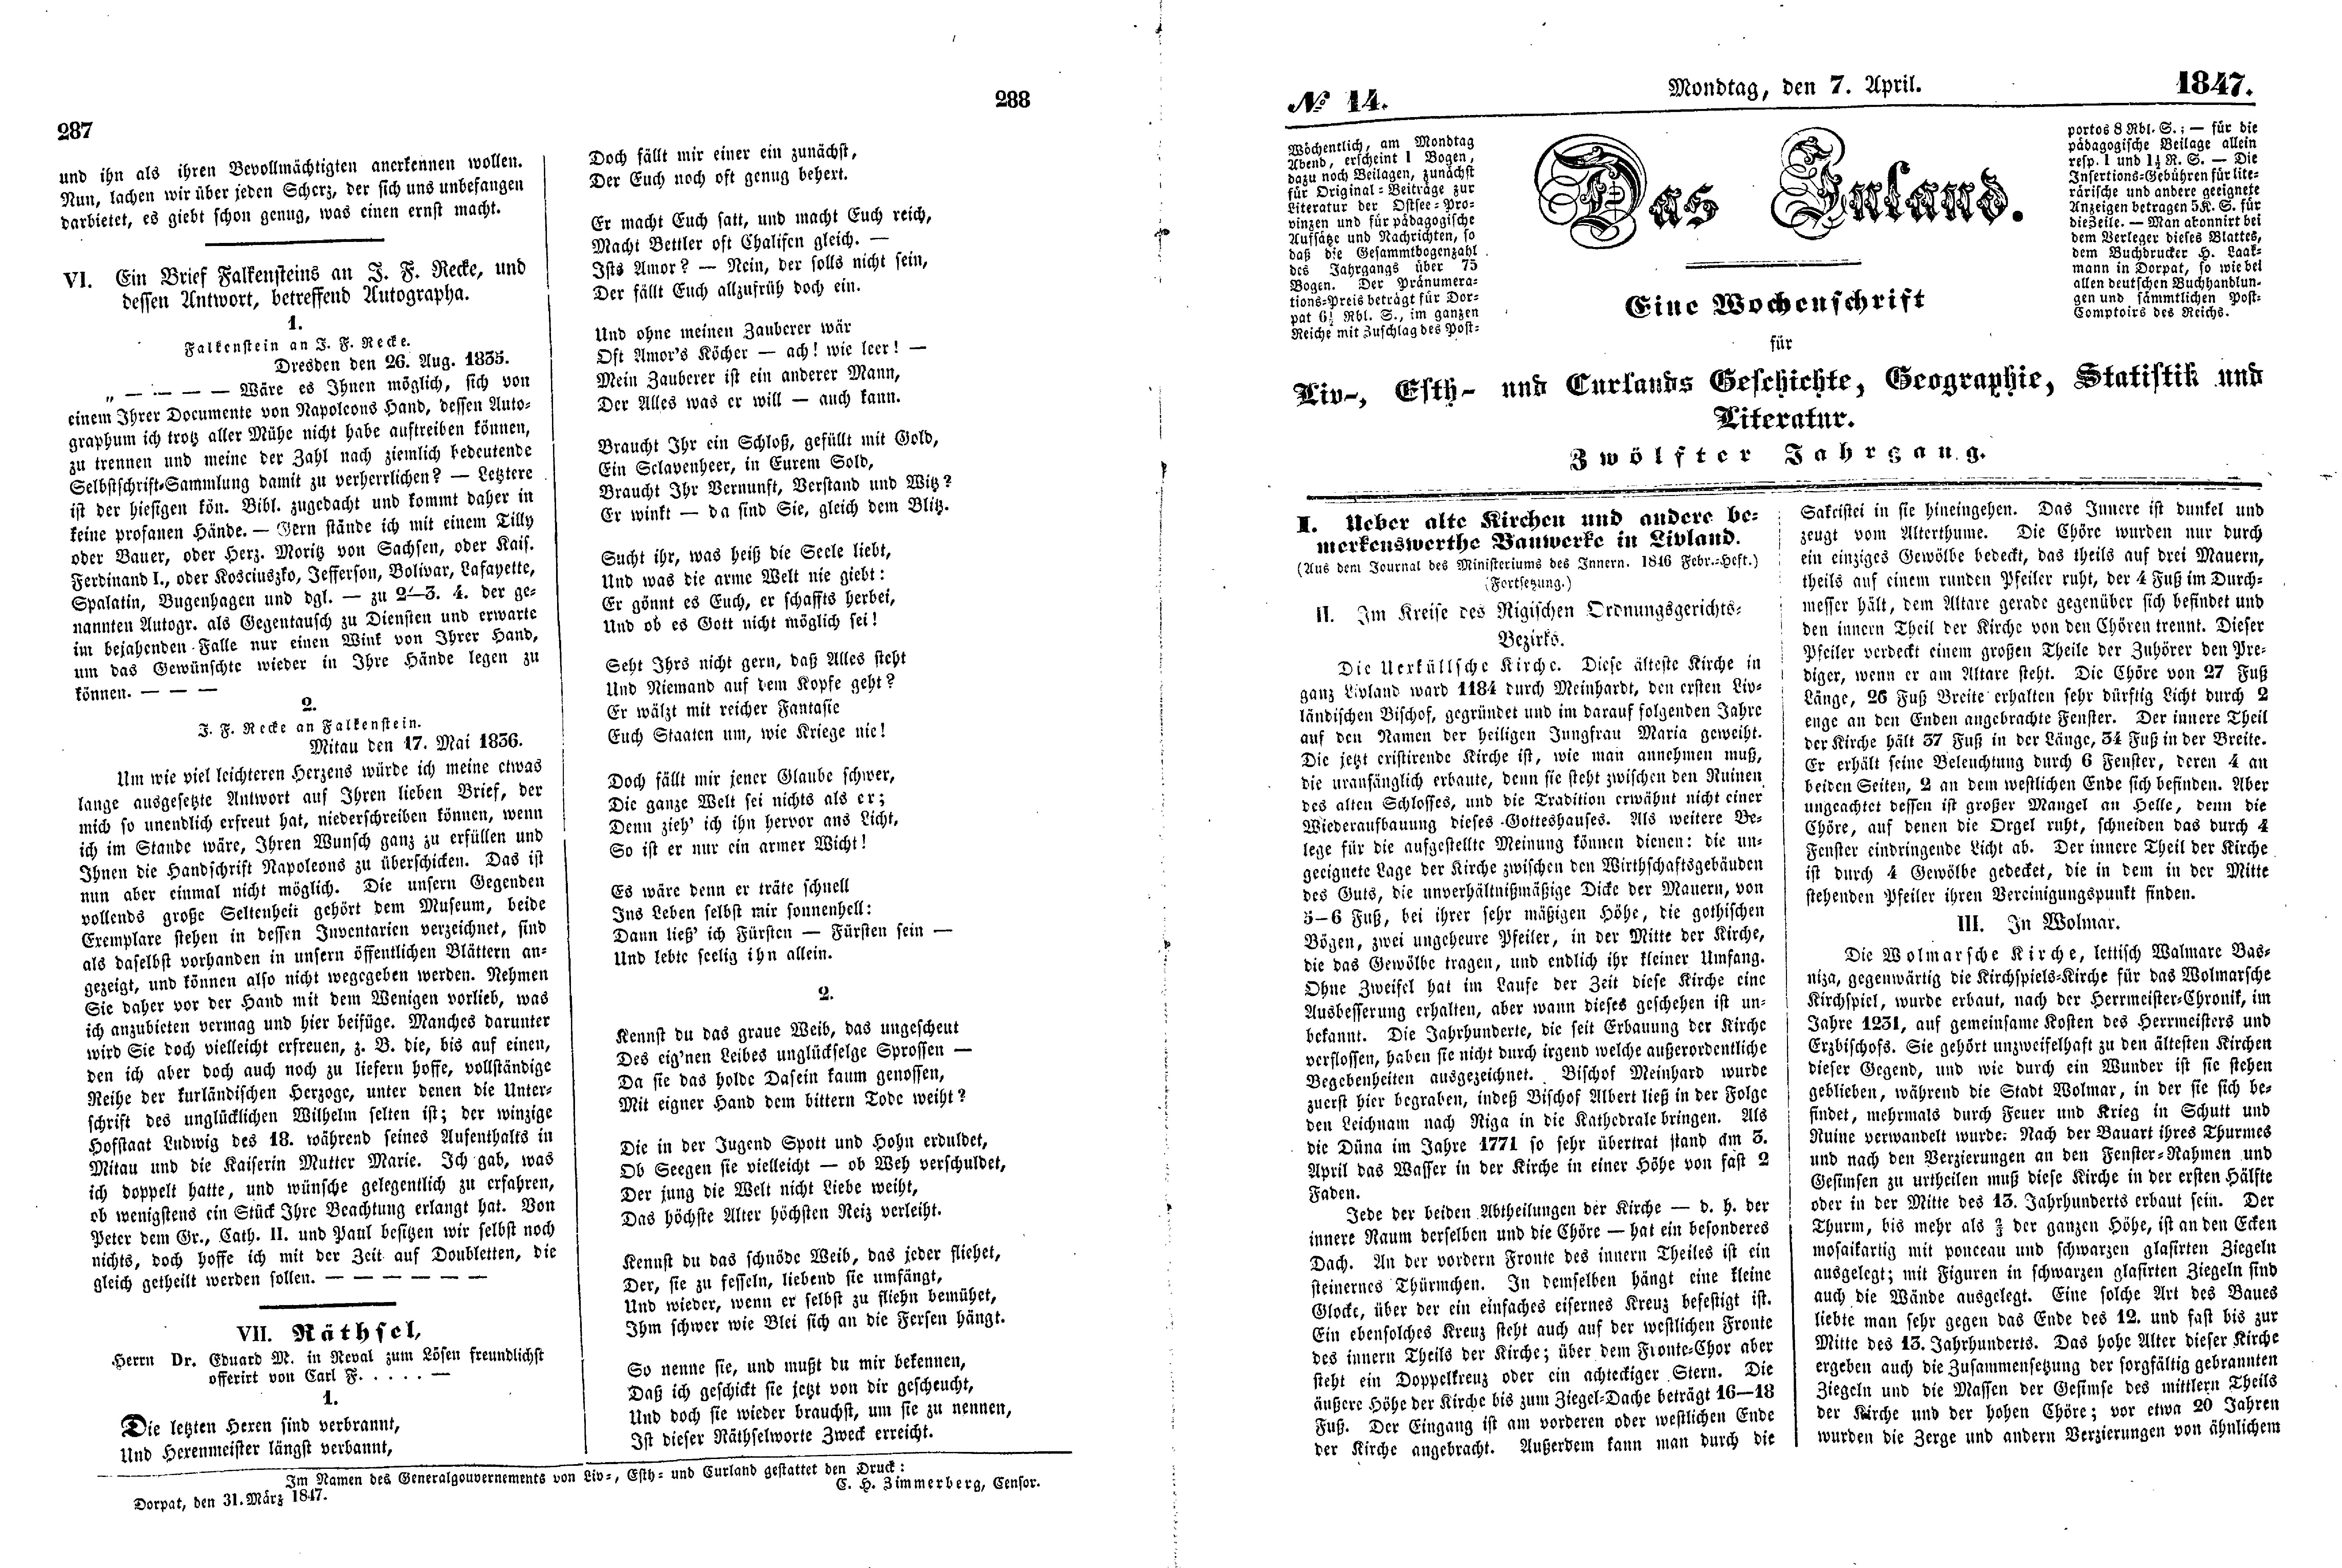 Das Inland [12] (1847) | 77. (287-290) Haupttext